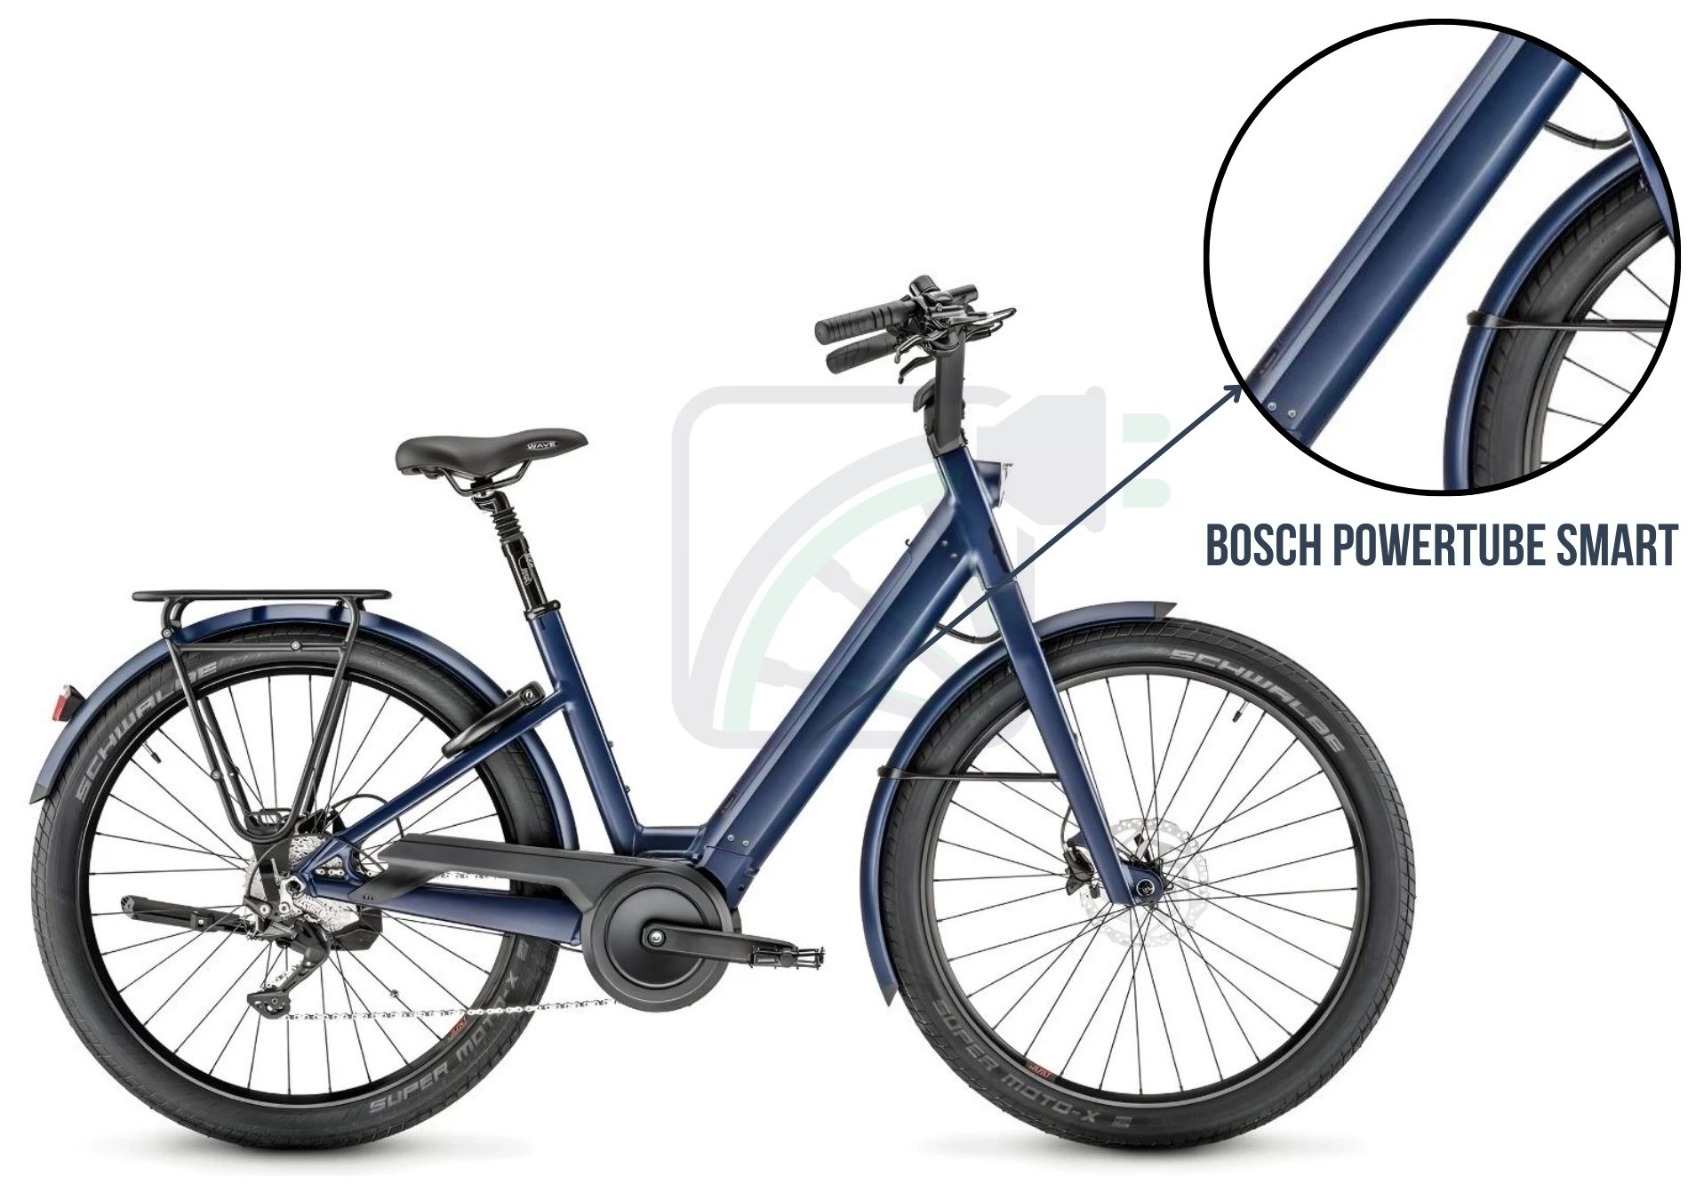 Foto eines Elektrofahrrads, das die Batterie des Fahrrads hervorhebt. Der hier gezeigte Akku ist der Bosch PowerTube. Es werden auch die verschiedenen Akkus erwähnt, die für dieses Fahrrad erhältlich sind. Dies sind die: Bosch PowerTube 400, 500, 625 und 750. Diese Akkus sind für die SMART- und Nicht-SMART-Varianten.